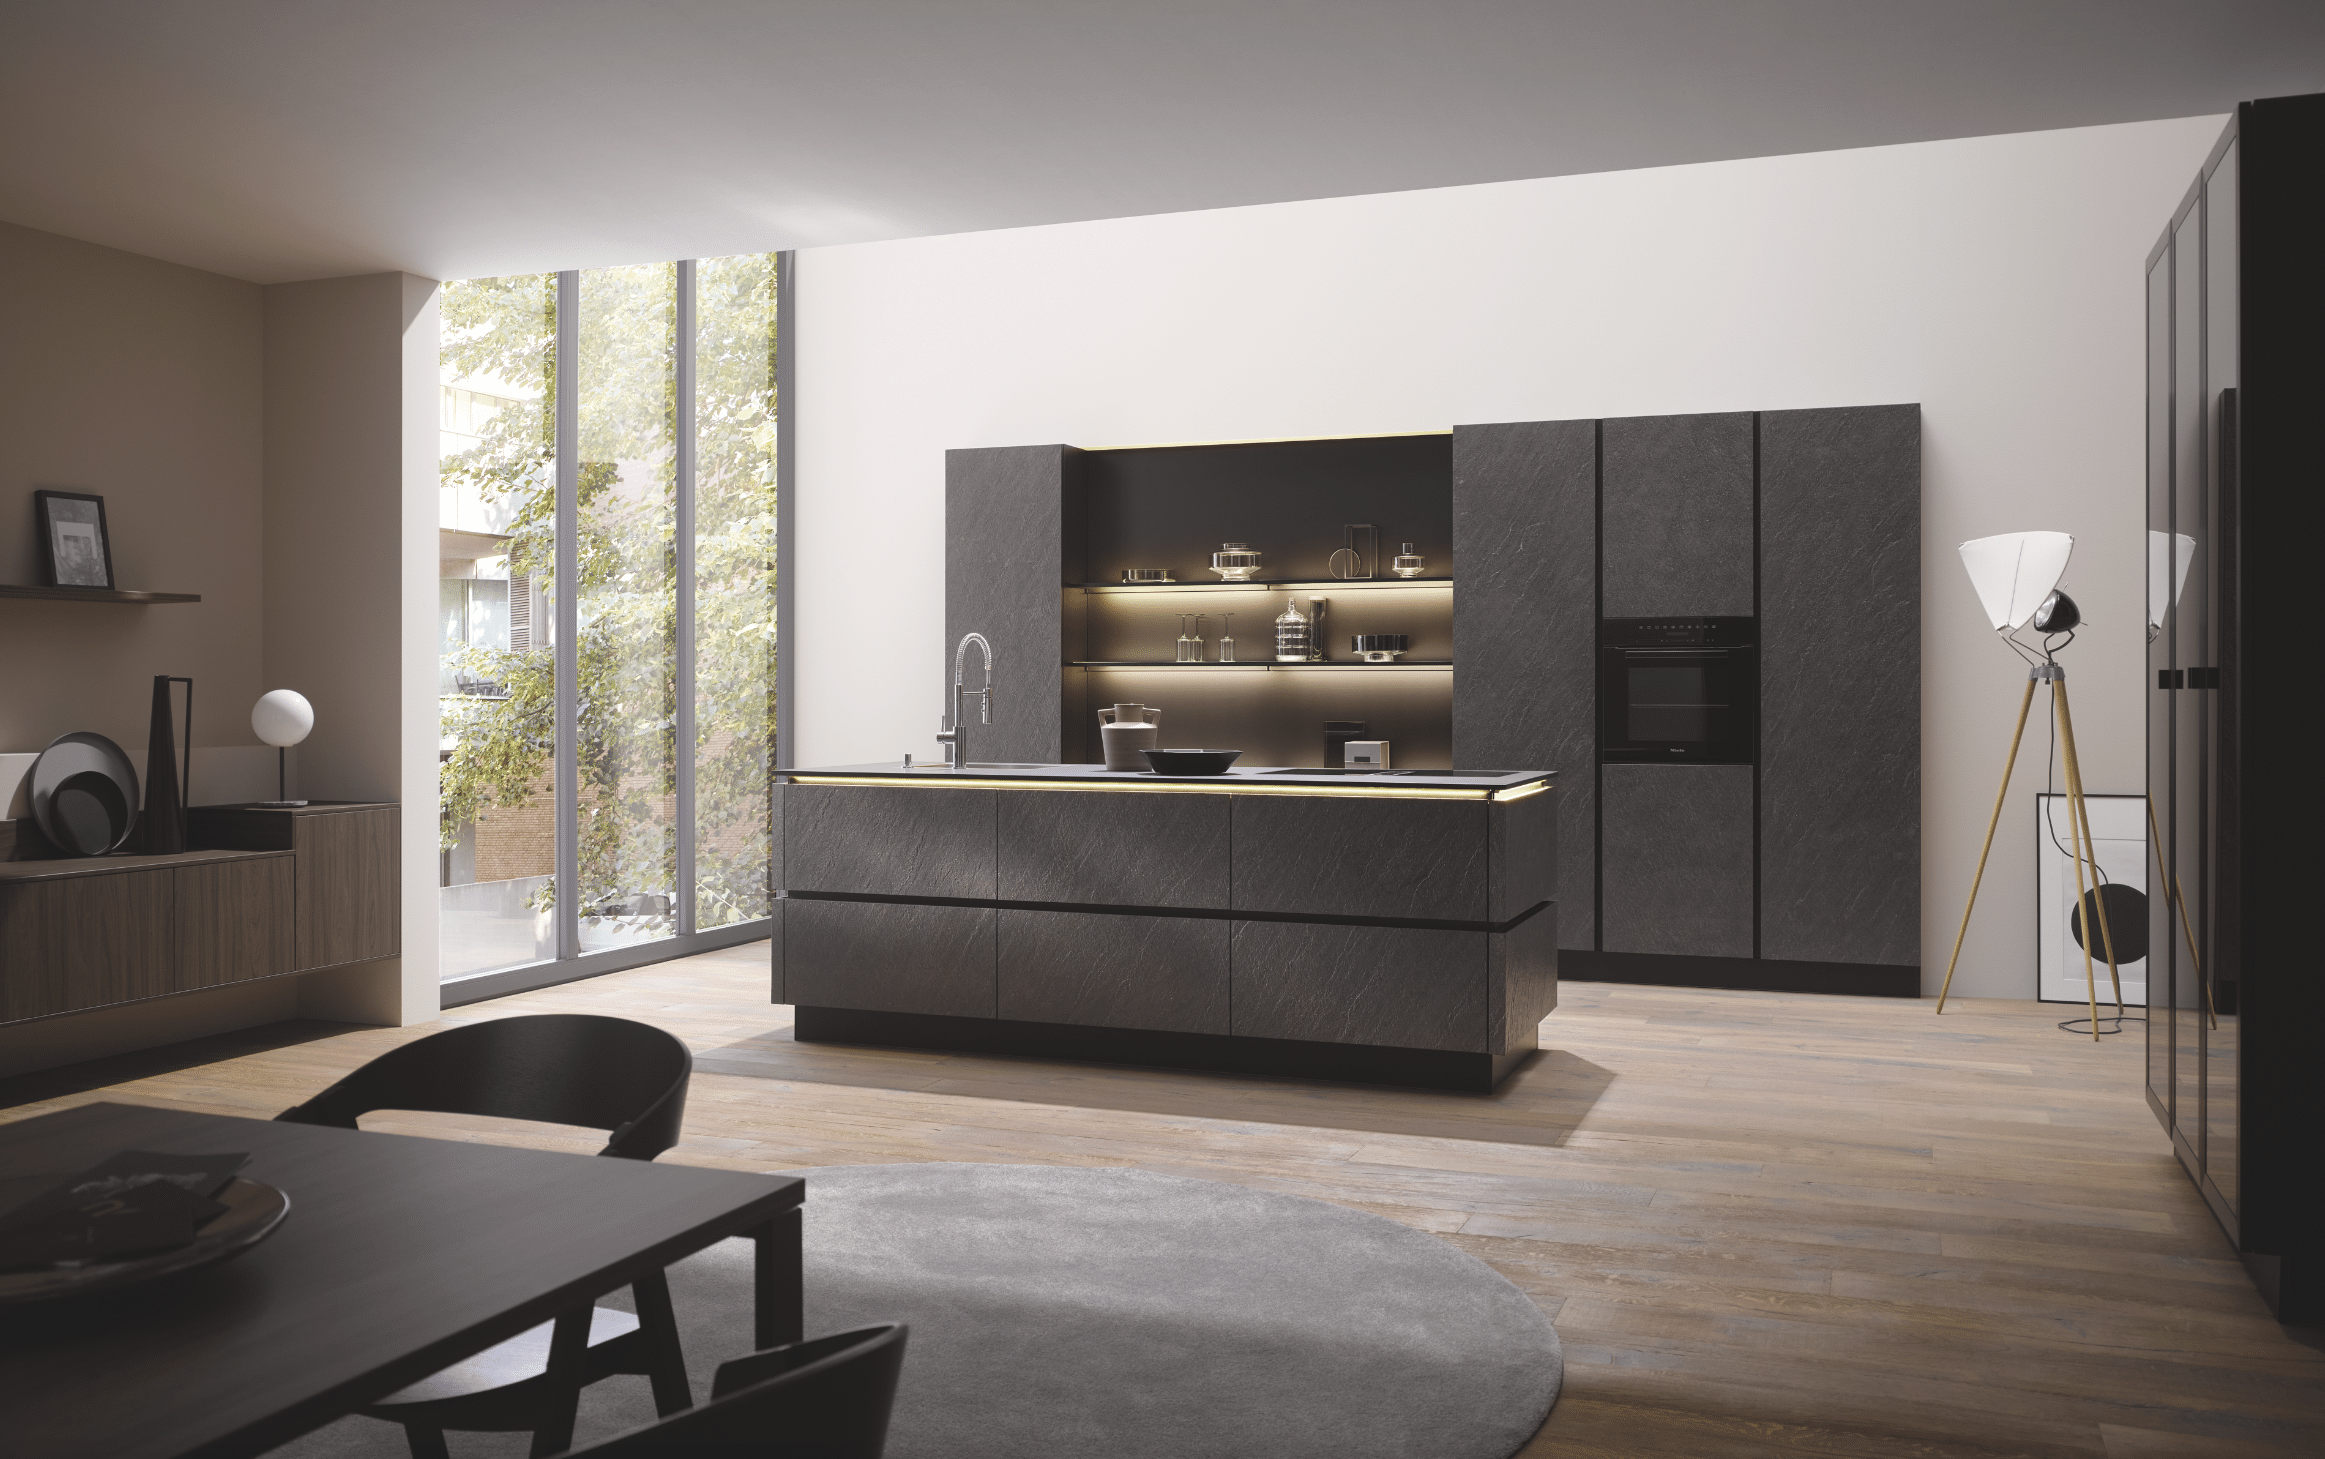 Tischlerei Bauer zeit eine moderne Küche mit Holzboden und einer Kücheninsel in dunklem grau mit Spülbecken und großem Einbauschrank mit integriertem Backofen von Häcker Küchen.